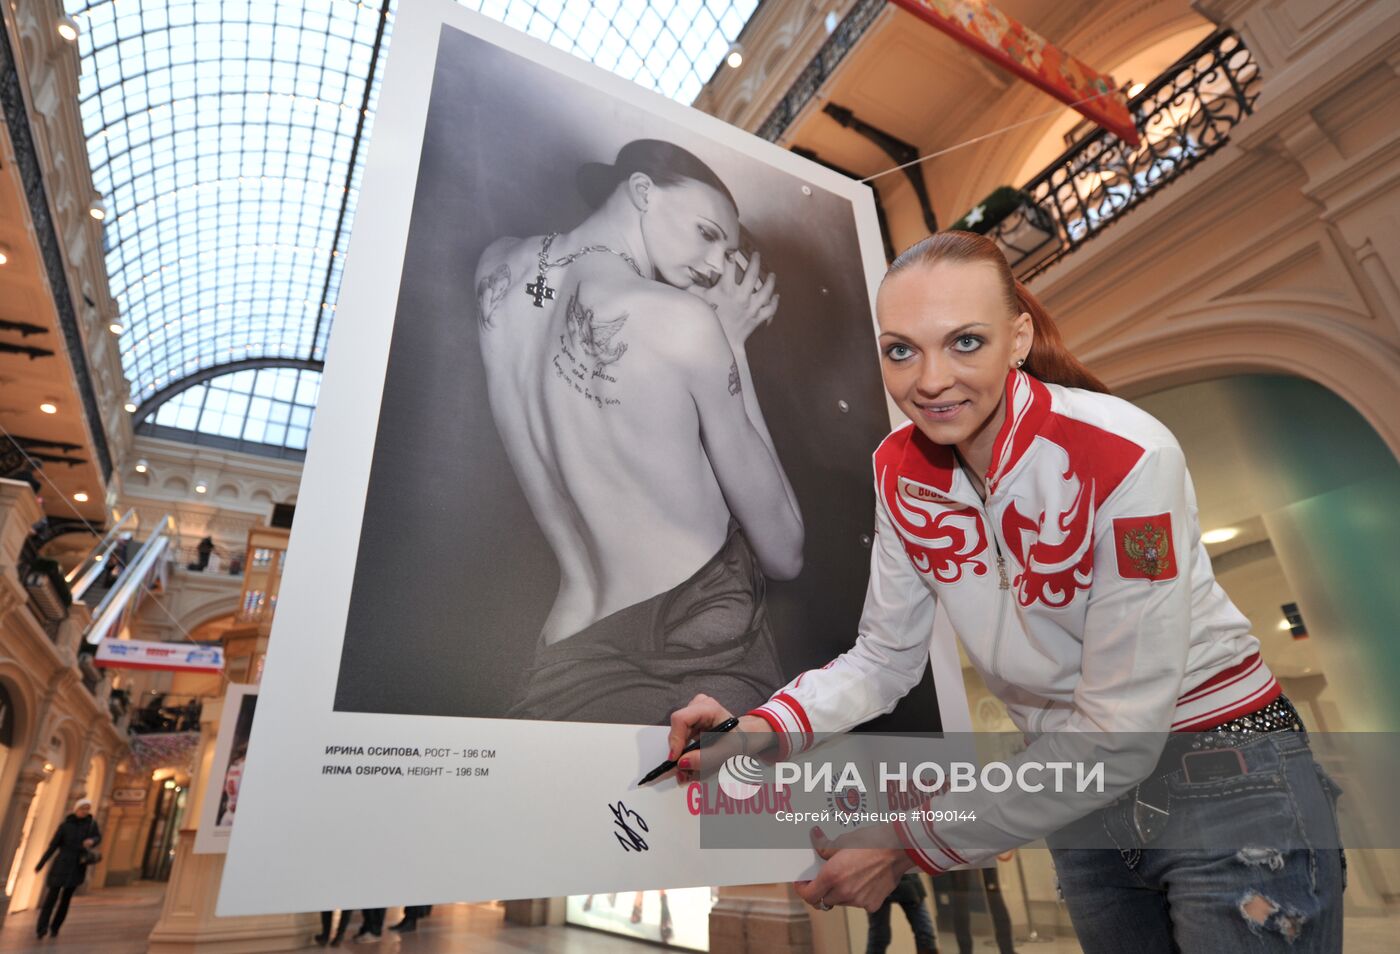 Открытие фотовыставки "Две стороны одной медали" в Москве